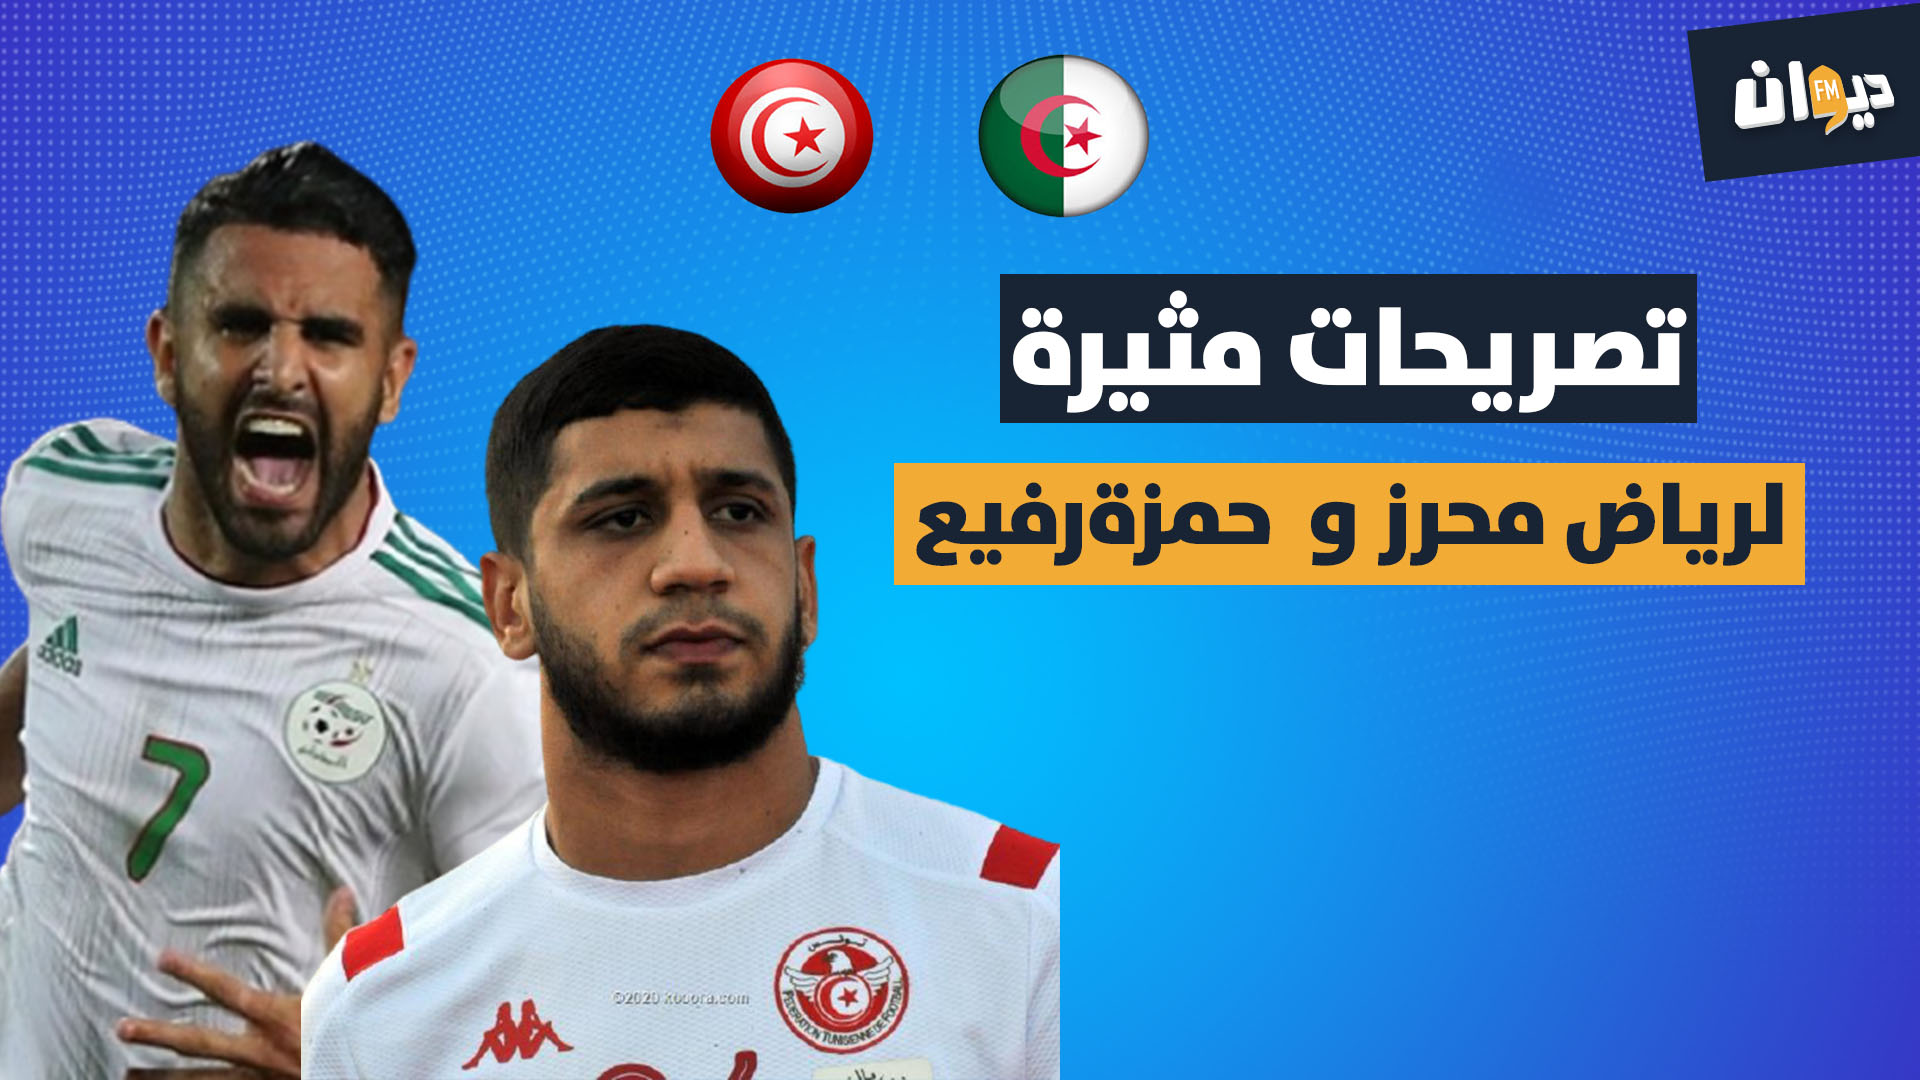 المنتخب التونسي و الجزائري